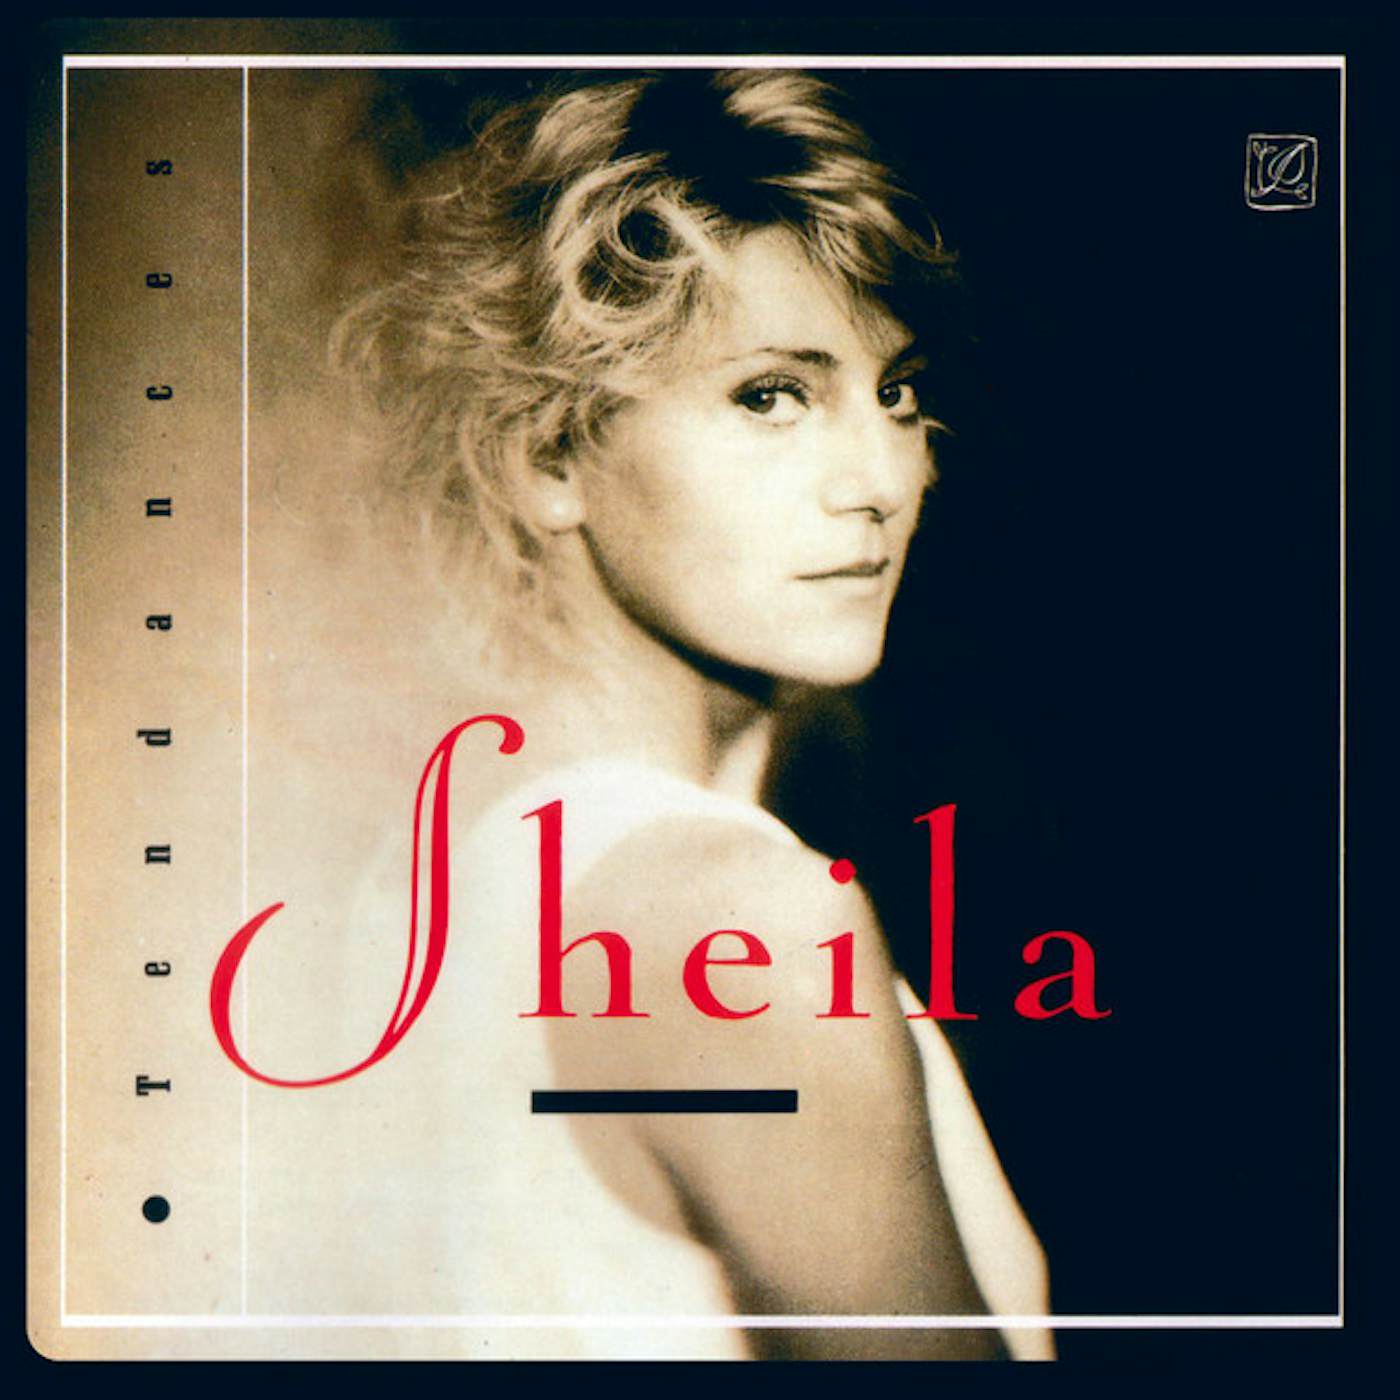 Sheila Tendances Vinyl Record